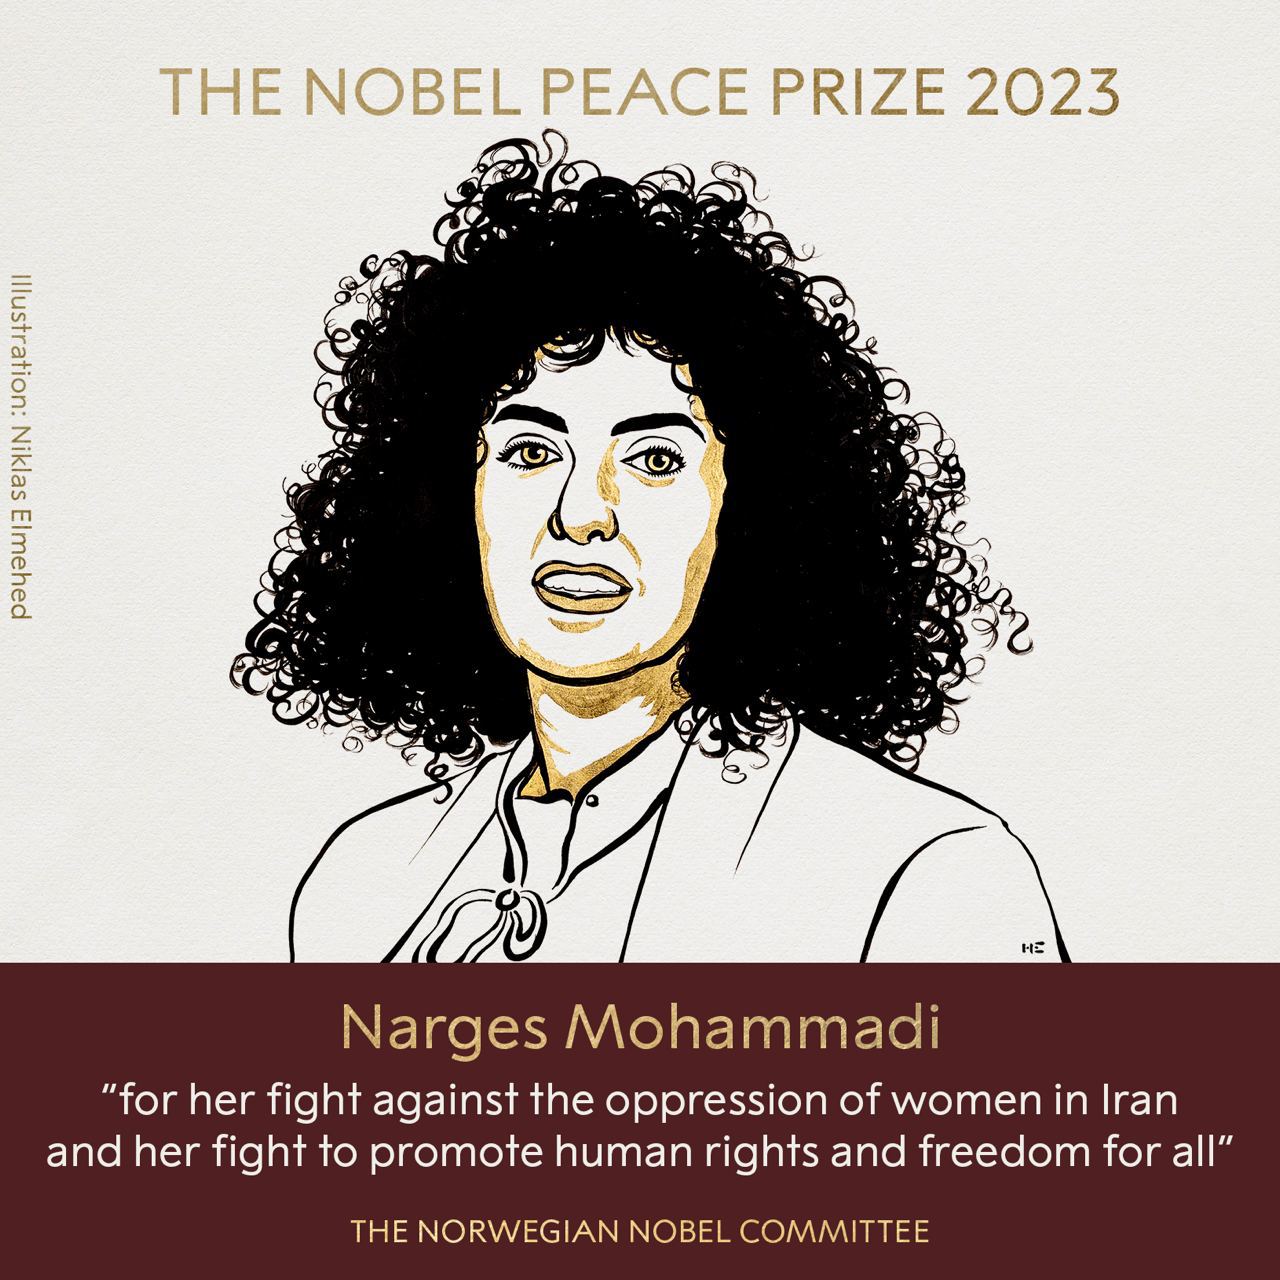 Иллюстрация к награждению Наргес Мохаммади. Источник - nobelpeaceprize.org